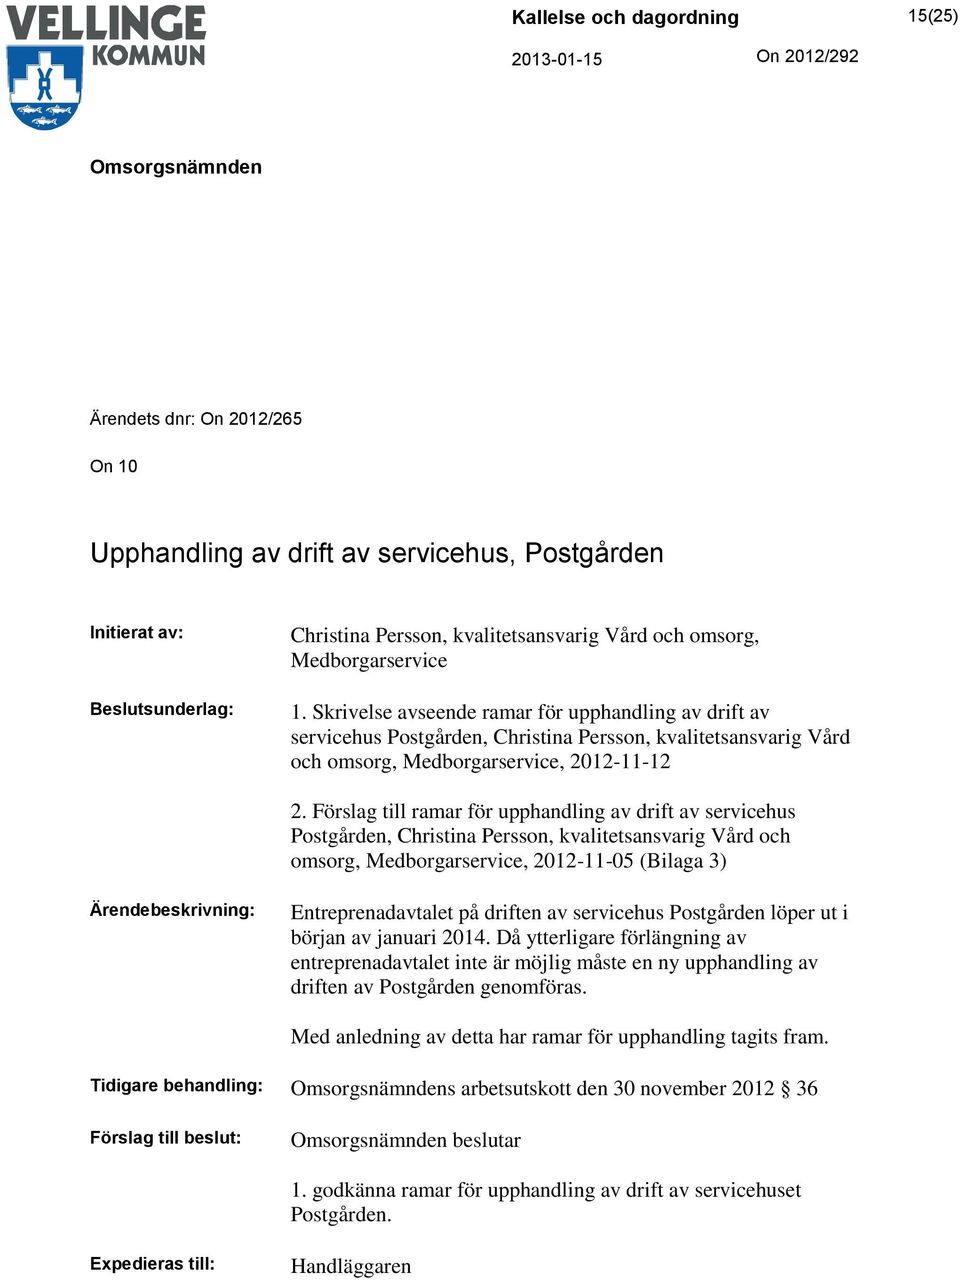 Förslag till ramar för upphandling av drift av servicehus Postgården, Christina Persson, kvalitetsansvarig Vård och omsorg, Medborgarservice, 2012-11-05 (Bilaga 3) Ärendebeskrivning: